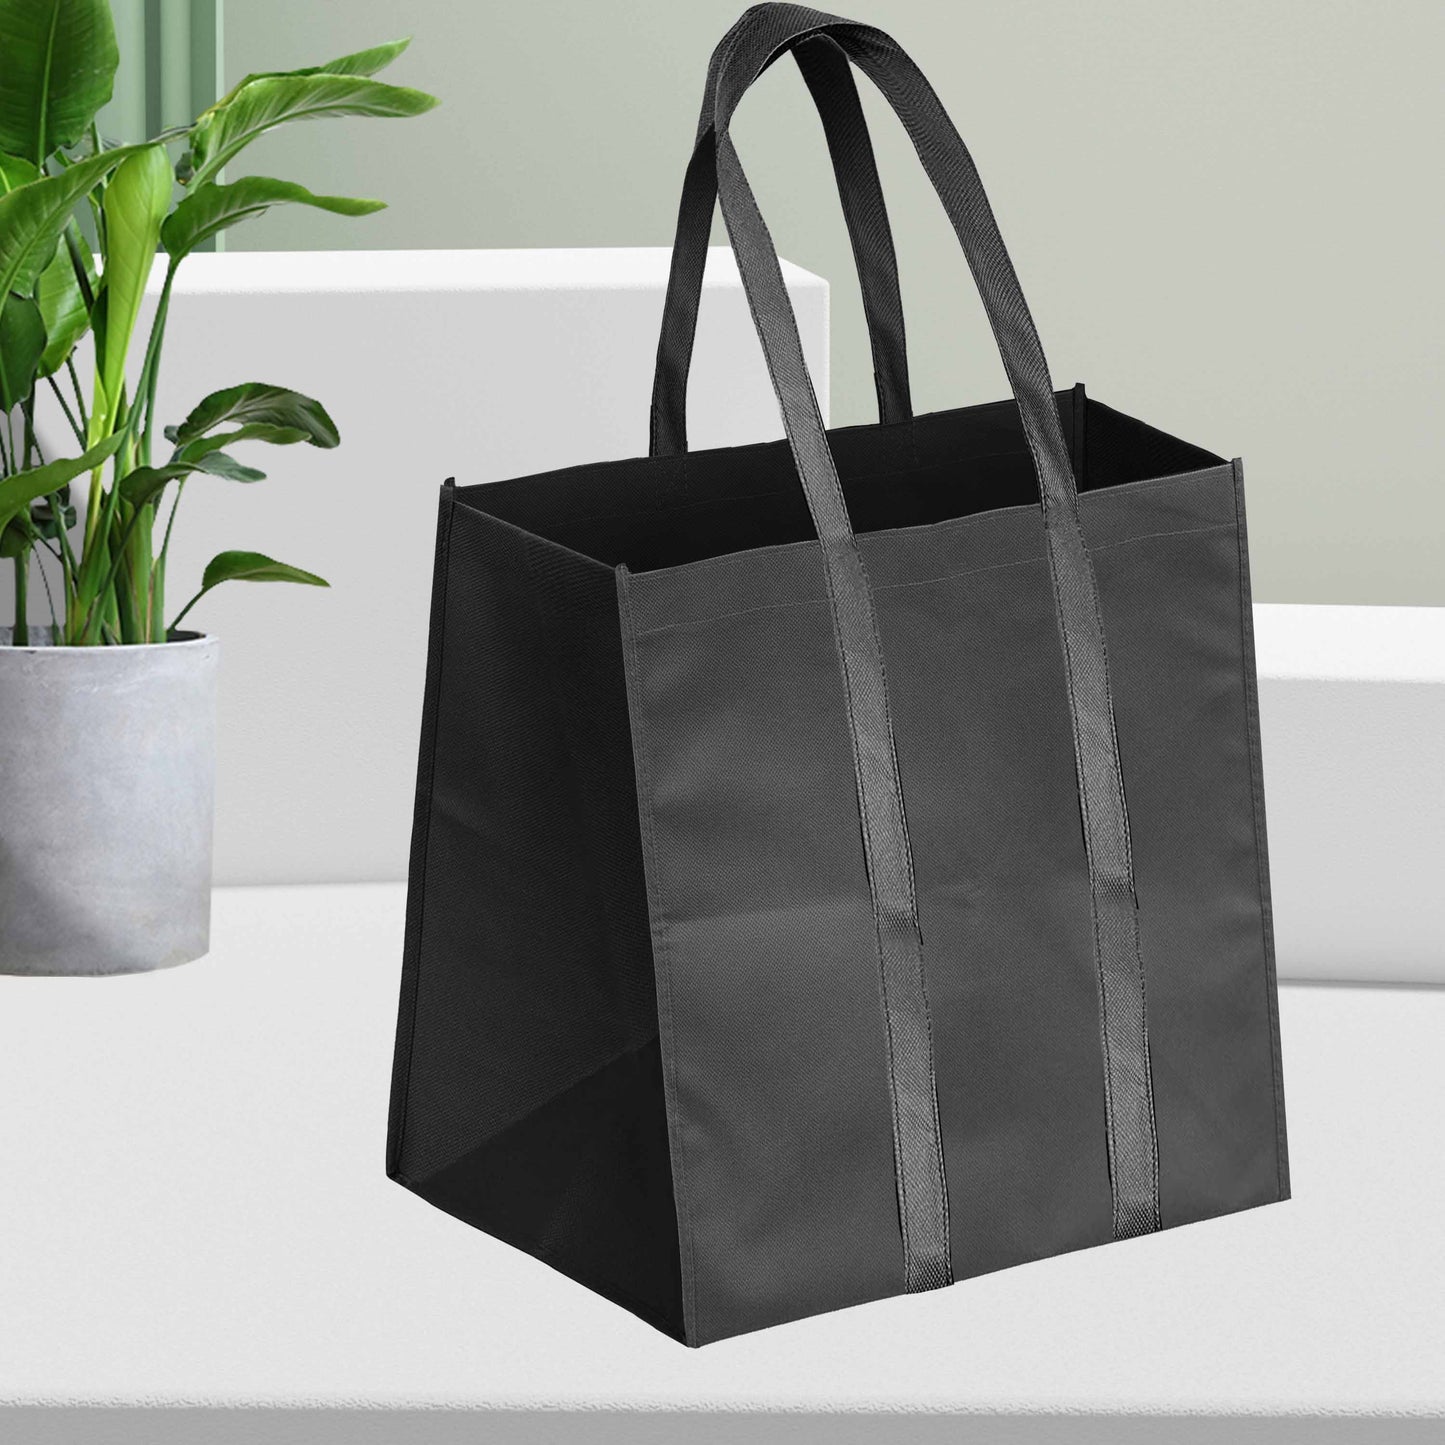 Reusable Non-Woven Shopping Bag - 12"W x 10"D x 14"H